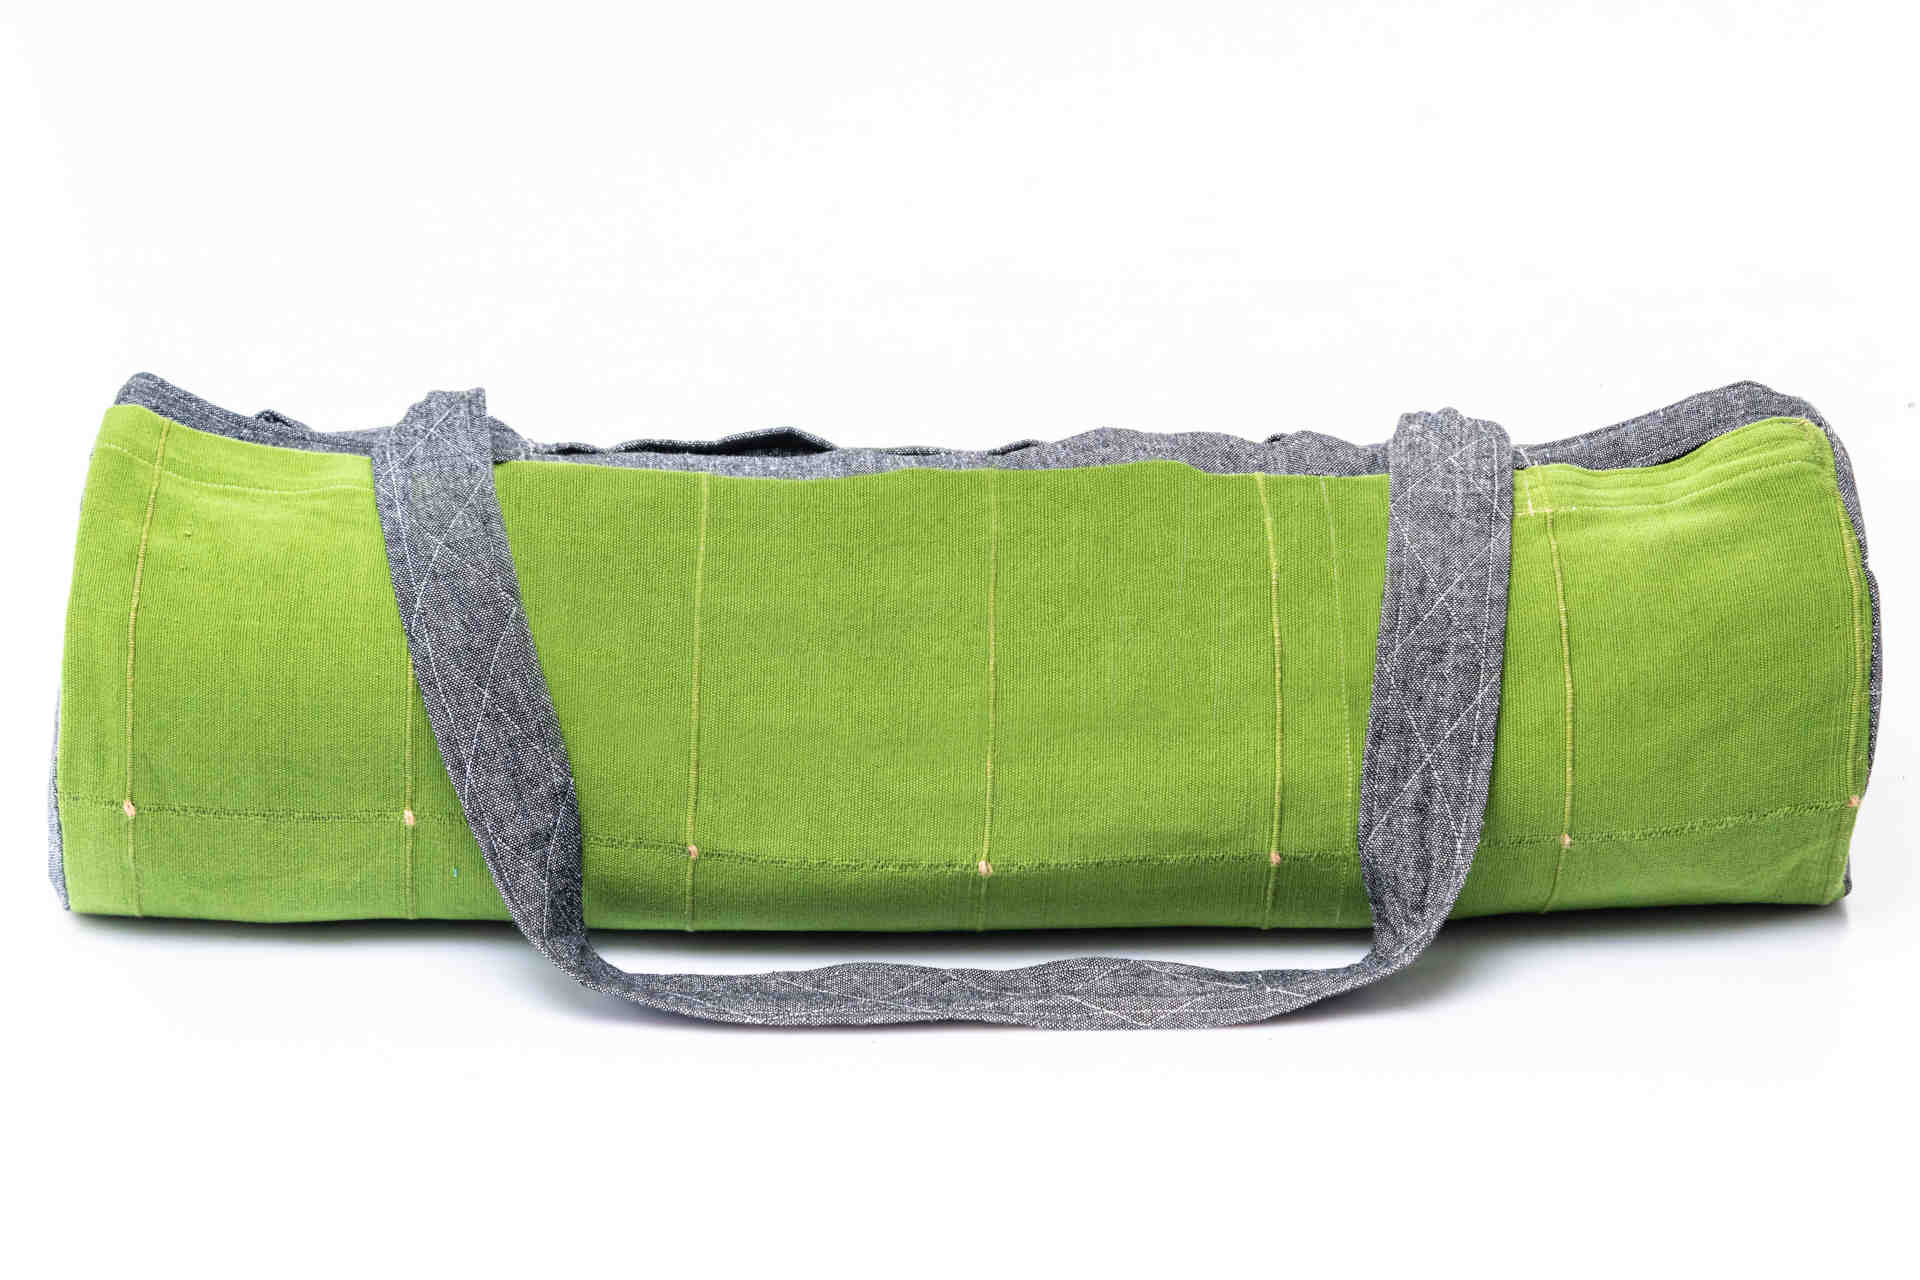 Fully Handmade Handloom Bag for women | eBay